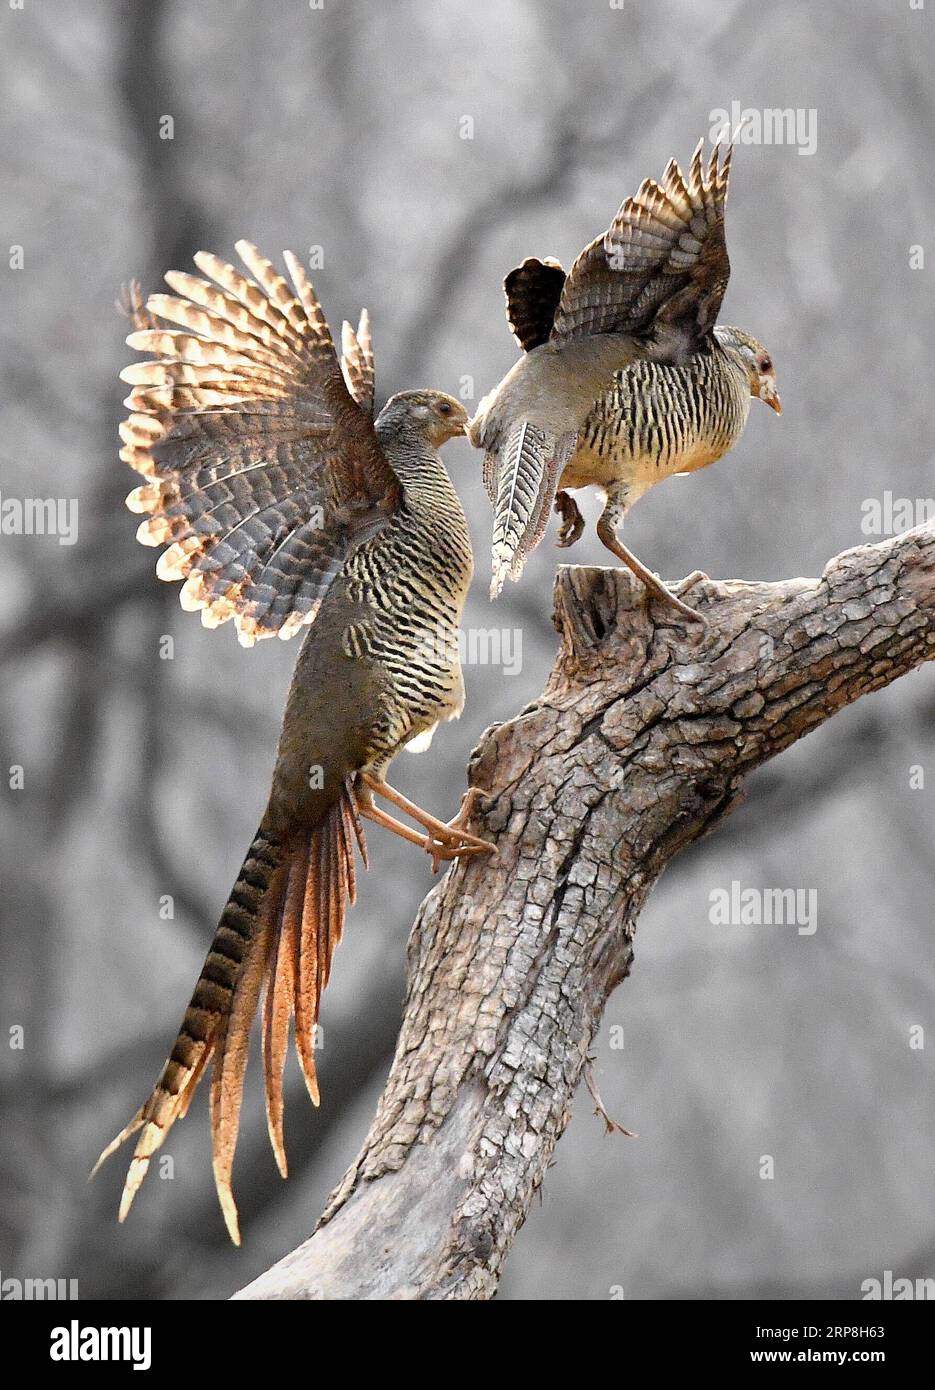 (190306) -- RUYANG, 6 marzo 2019 -- due fagiani d'oro si divertono nei boschi al villaggio di Mengcun nella contea di Ruyang, nella provincia centrale di Henan nella Cina, il 5 marzo 2019. Mengcun Village si trova sul Monte Funiu. Di solito è colpita da nevicate negli inverni e gli uccelli selvatici sono privi di cibo. Wang Liuji, un ranger forestale del villaggio di 59 anni, nutre gli uccelli con i prodotti alimentari della sua famiglia, una mossa che lo ha reso noto come lo zio degli uccelli . Il raduno di uccelli selvatici ha attirato molti fotografi. Wang li organizza per scattare foto nelle posizioni appropriate senza disturbare gli uccelli e. Foto Stock